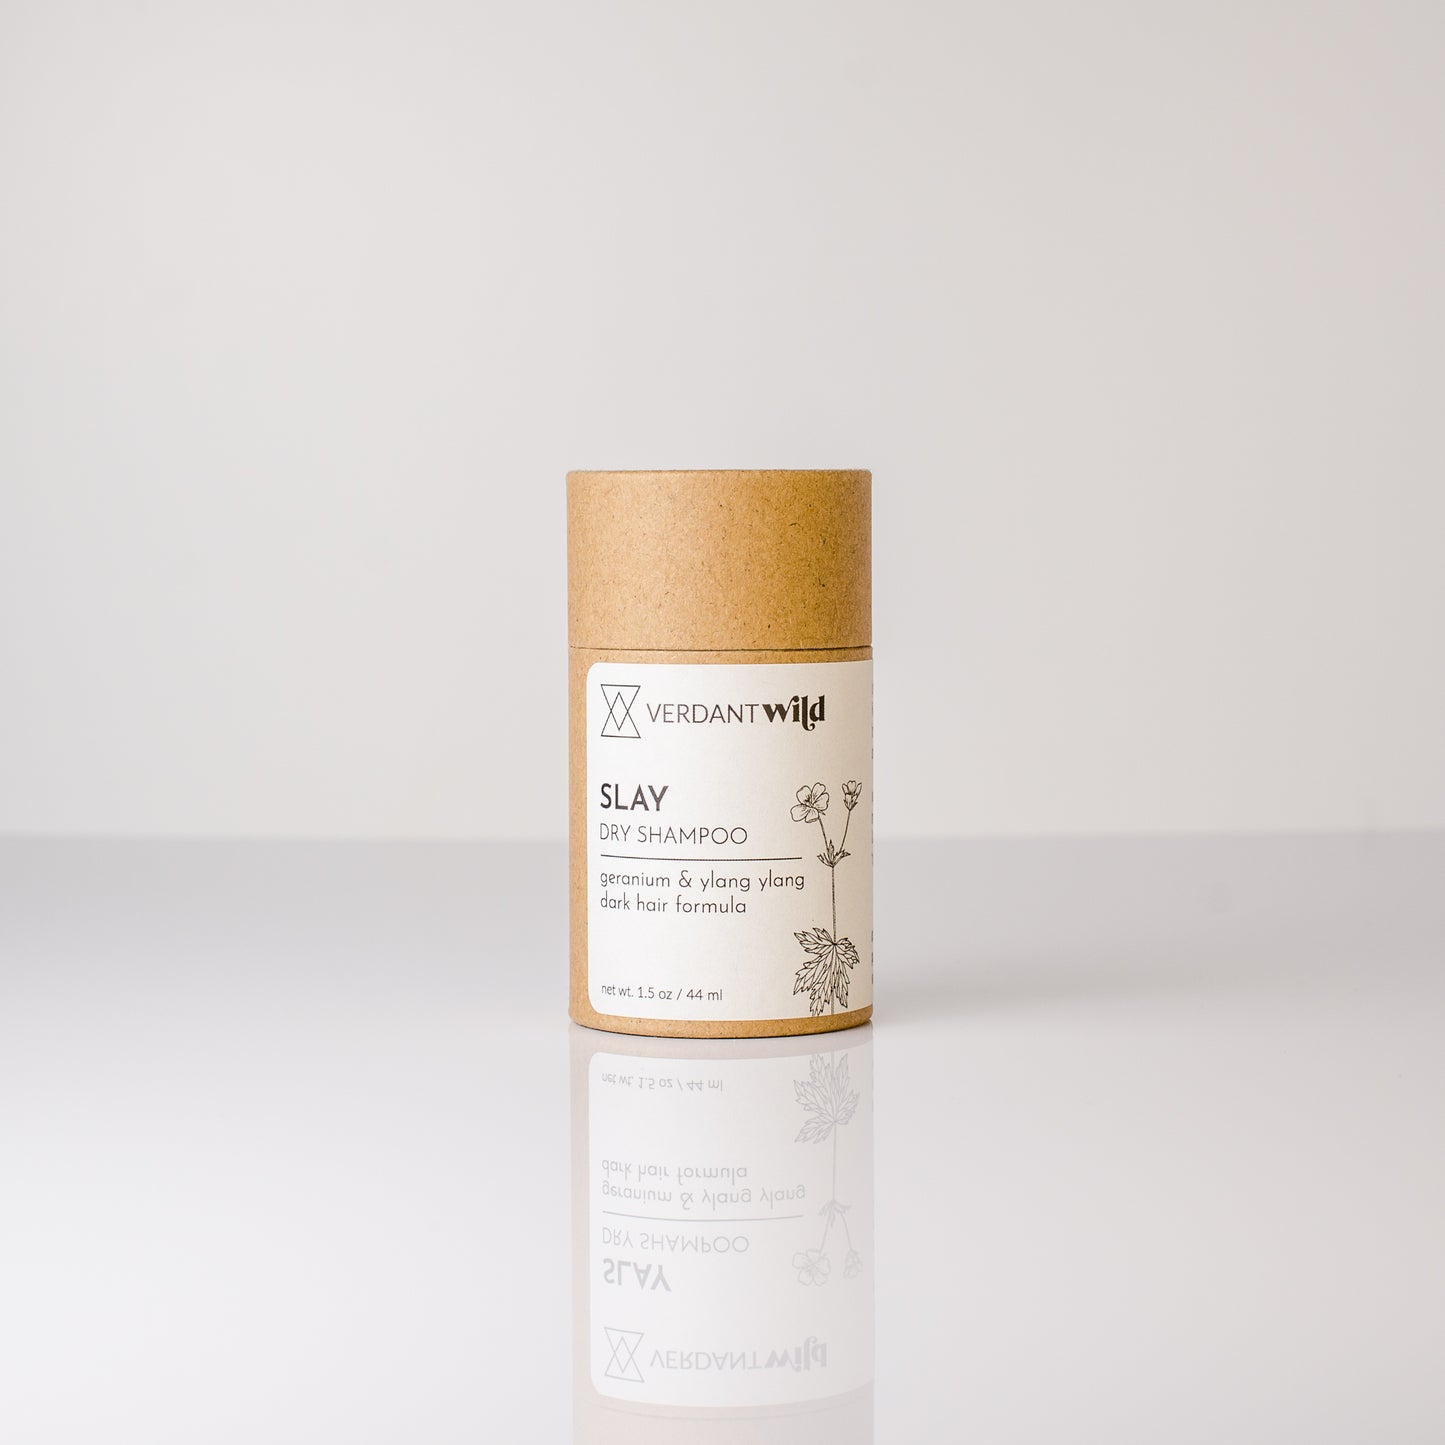 dry shampoo powder for dark hair with geranium and ylang ylang